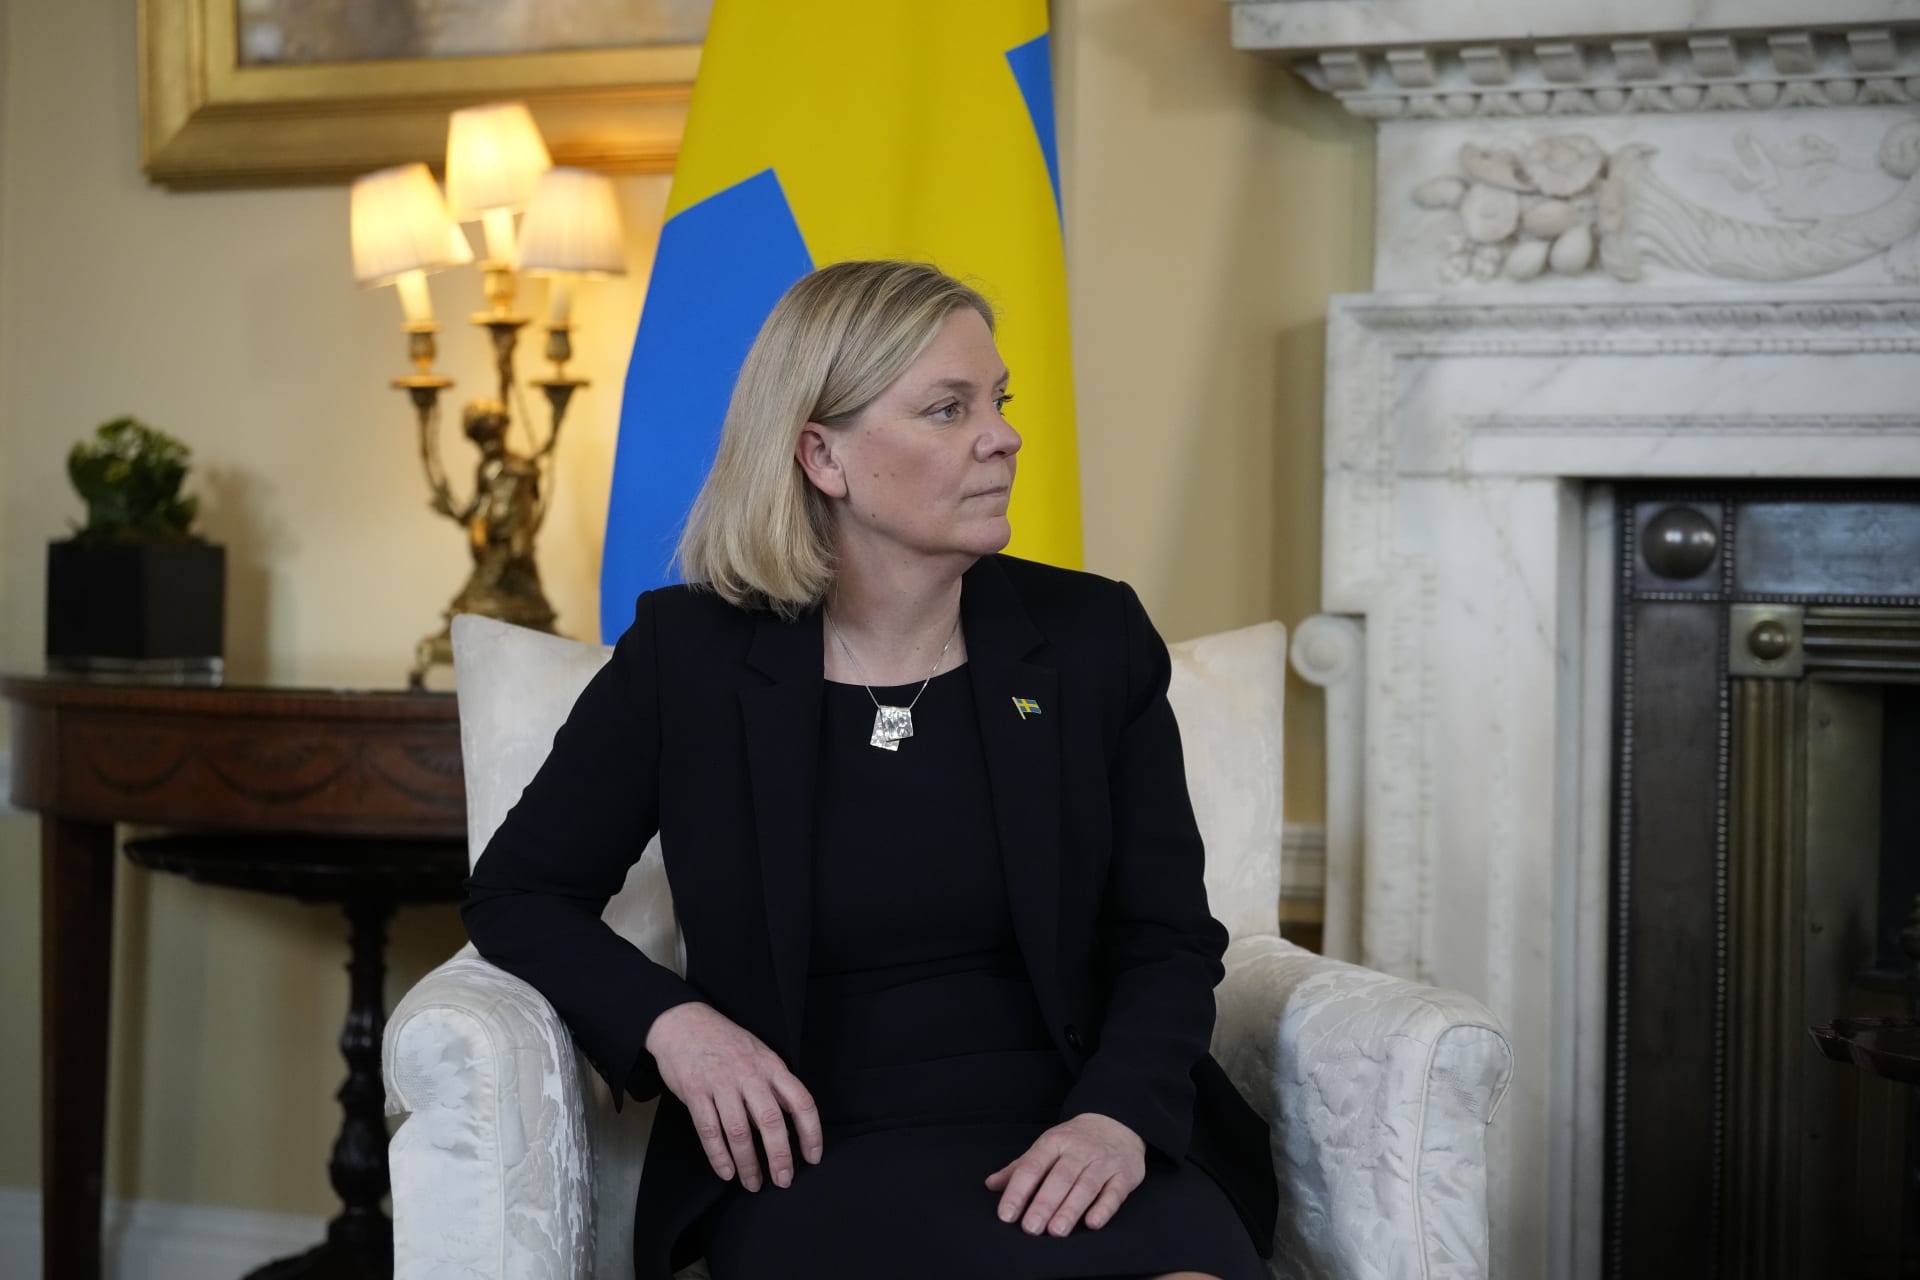 السويد تدرس إمكانية الانضمام لحلف شمال الأطلسي: "الخارطة الأمنية تغيرت"